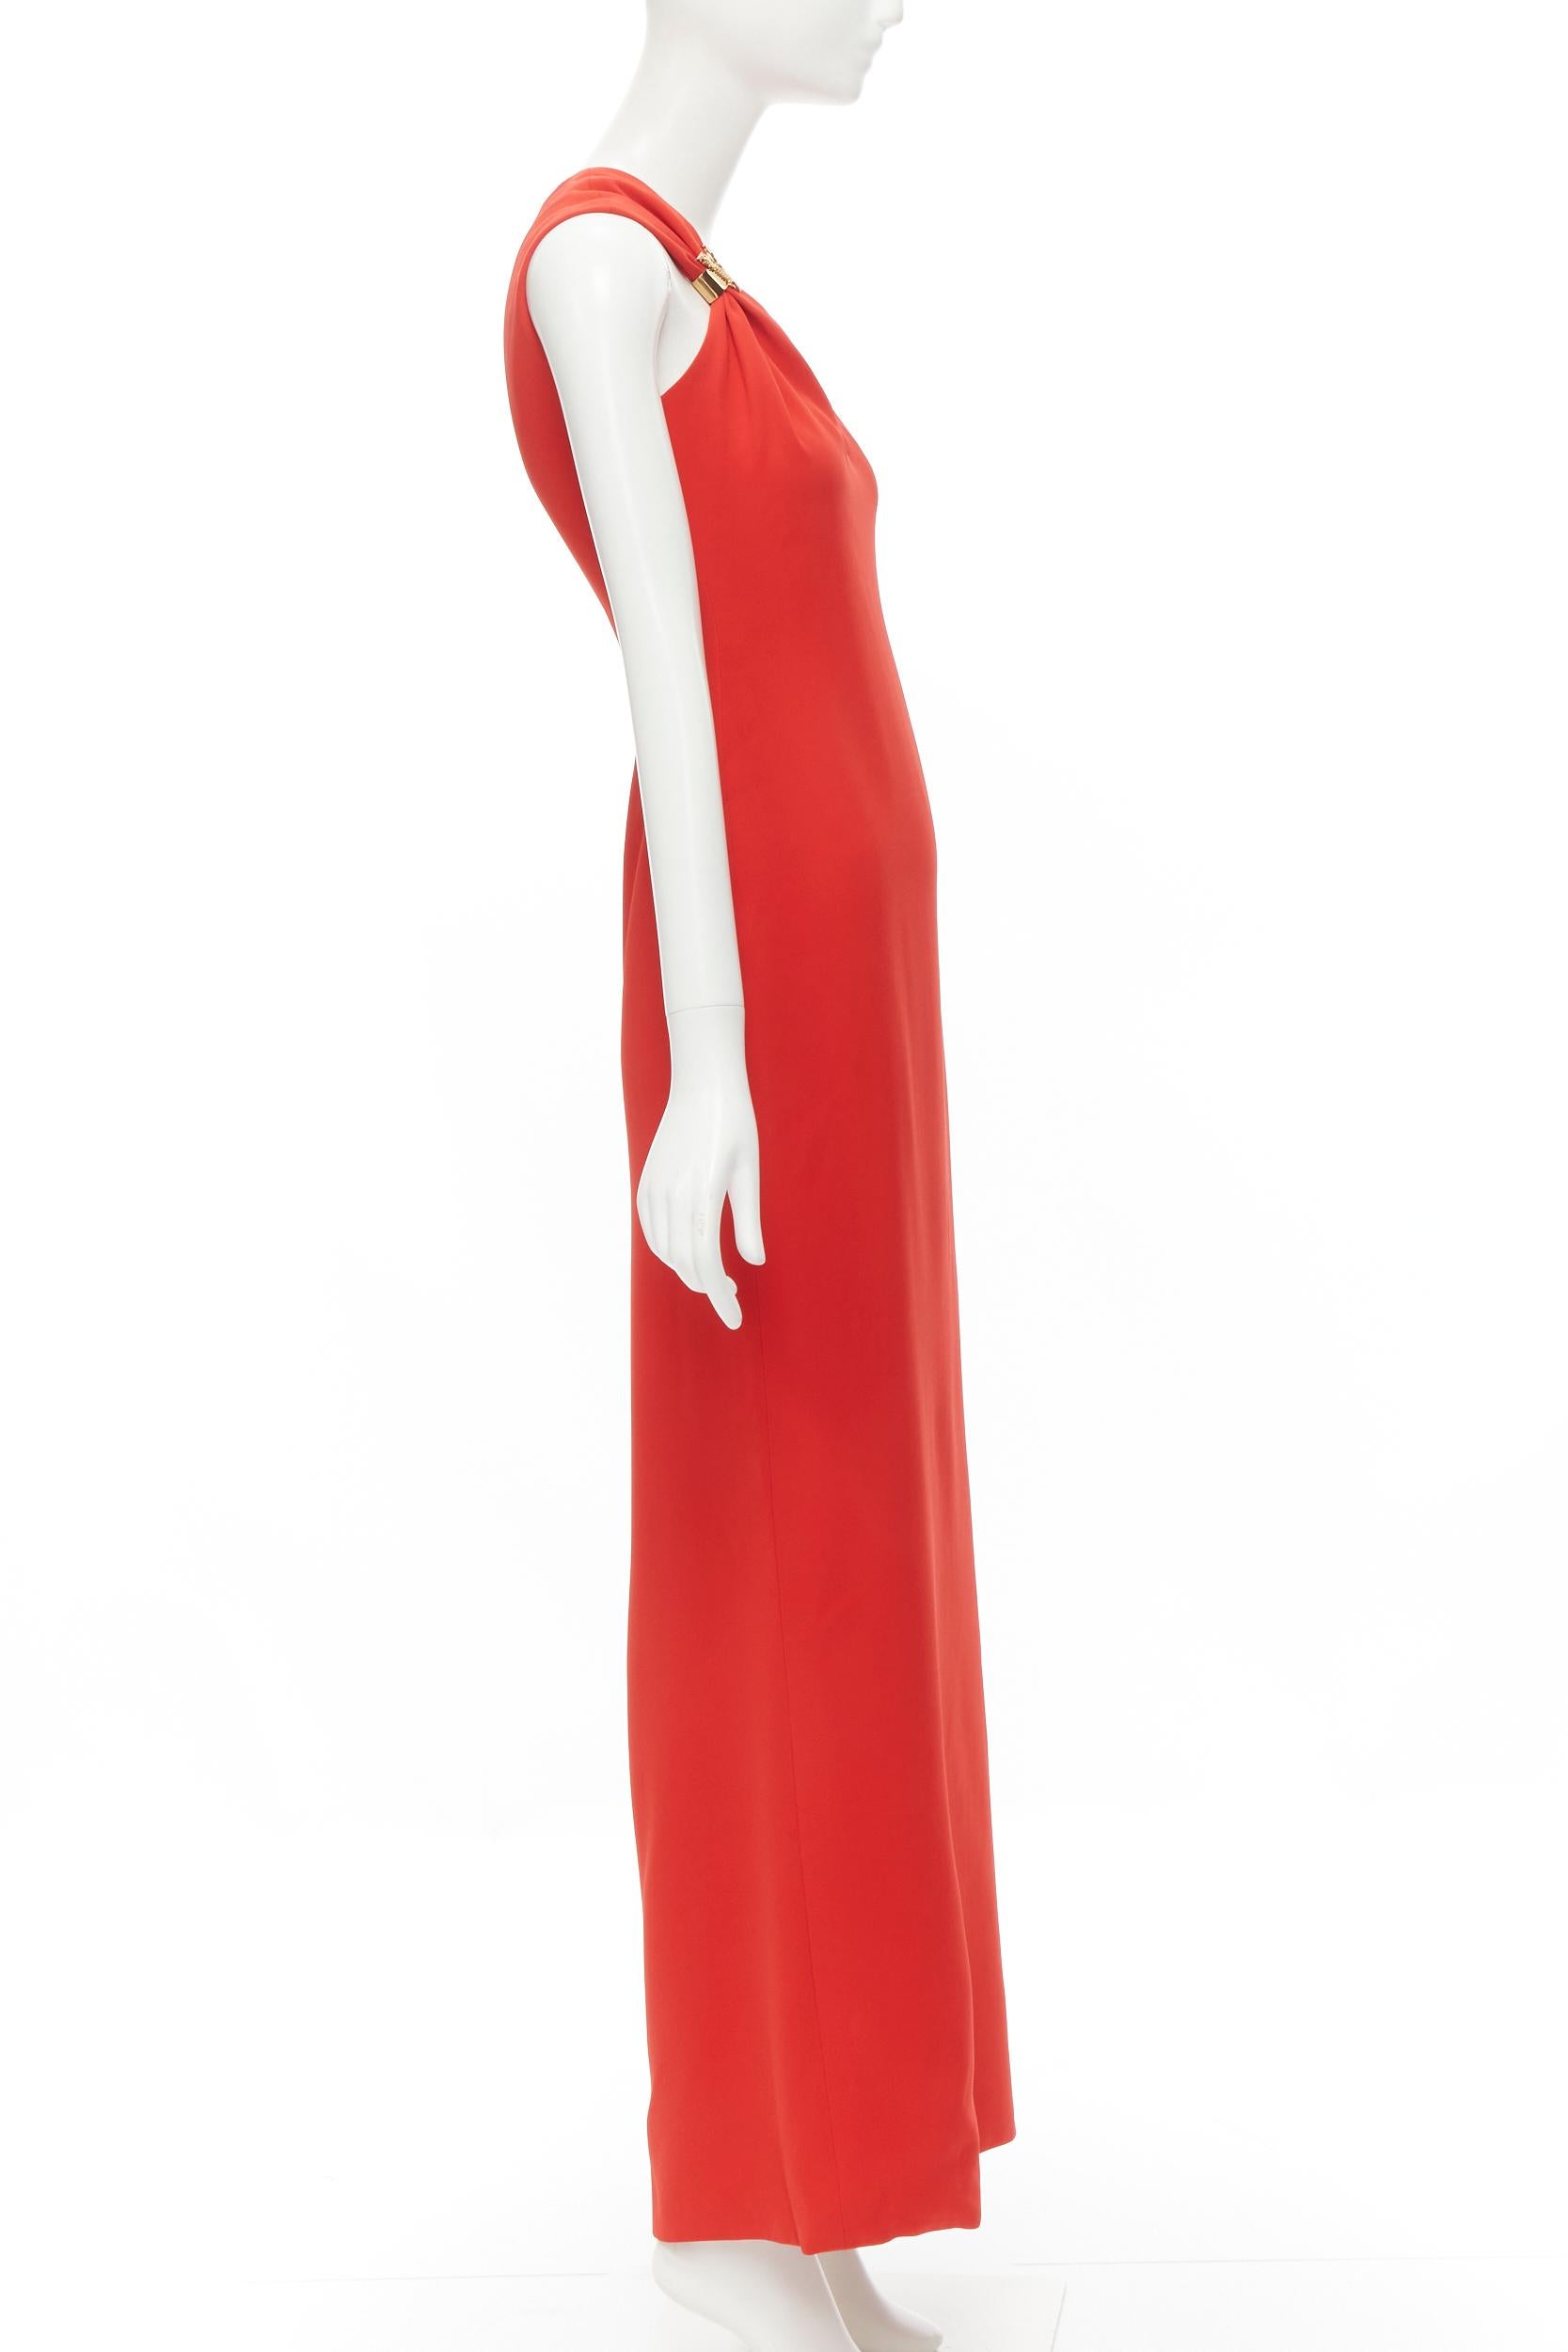 Versace - Robe asymétrique rouge 100 % soie avec fermoir en V vertueux, taille IT 42 M, état neuf Neuf - En vente à Hong Kong, NT